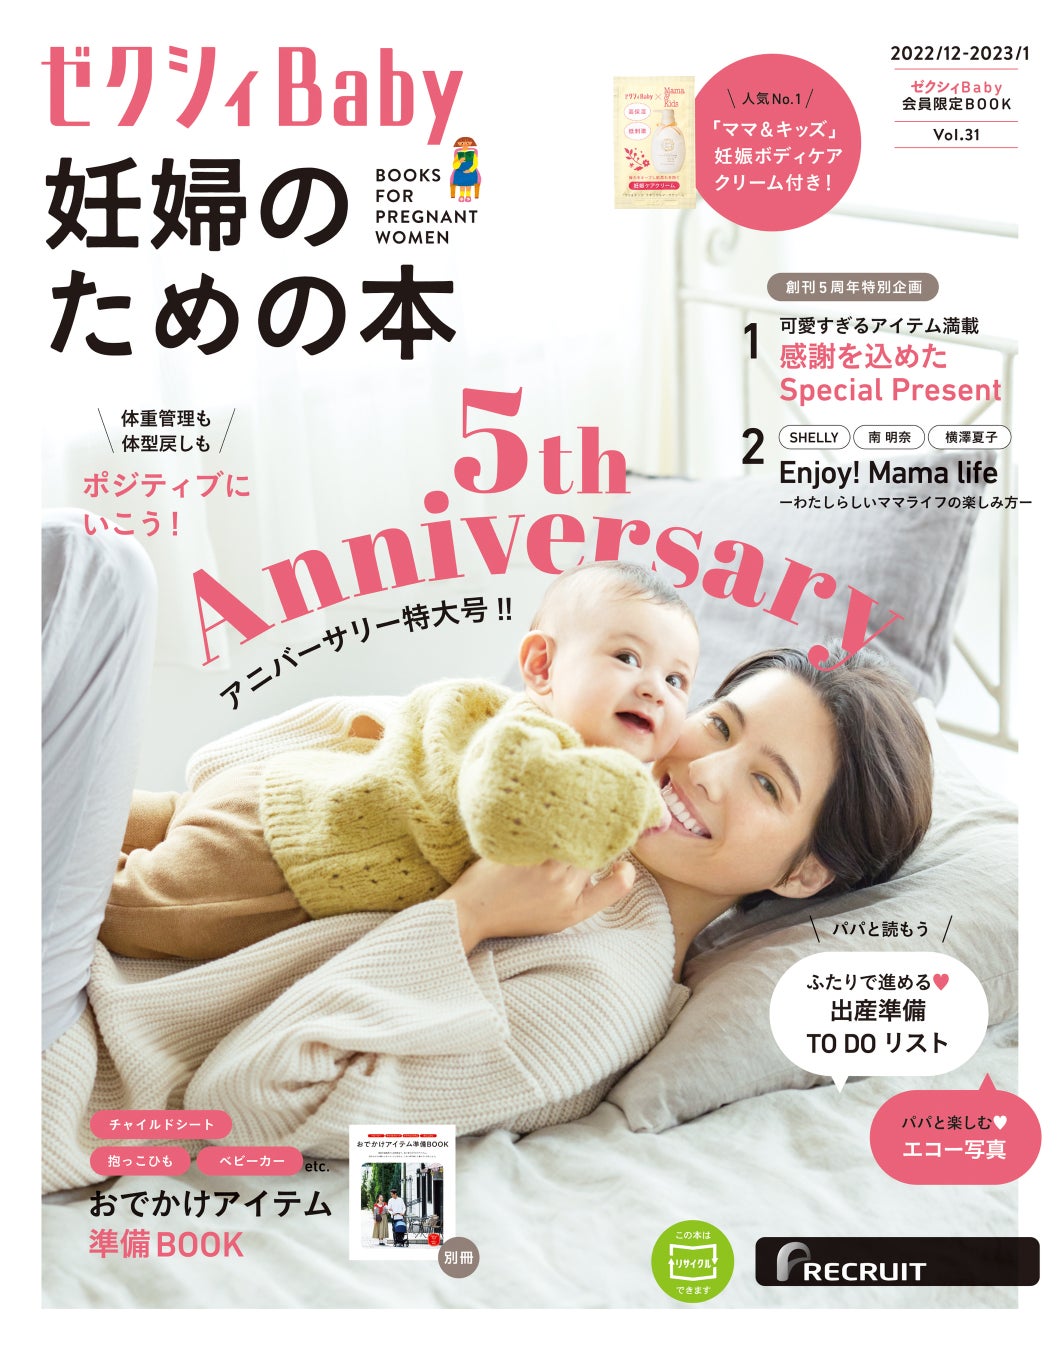 11月29日、人気育児雑誌が選ぶ子育てトレンドが発表第15回 ペアレンティングアワード2022 日本で一番読まれている子育て情報誌「あんふぁん」「ぎゅって」が参加のサブ画像6